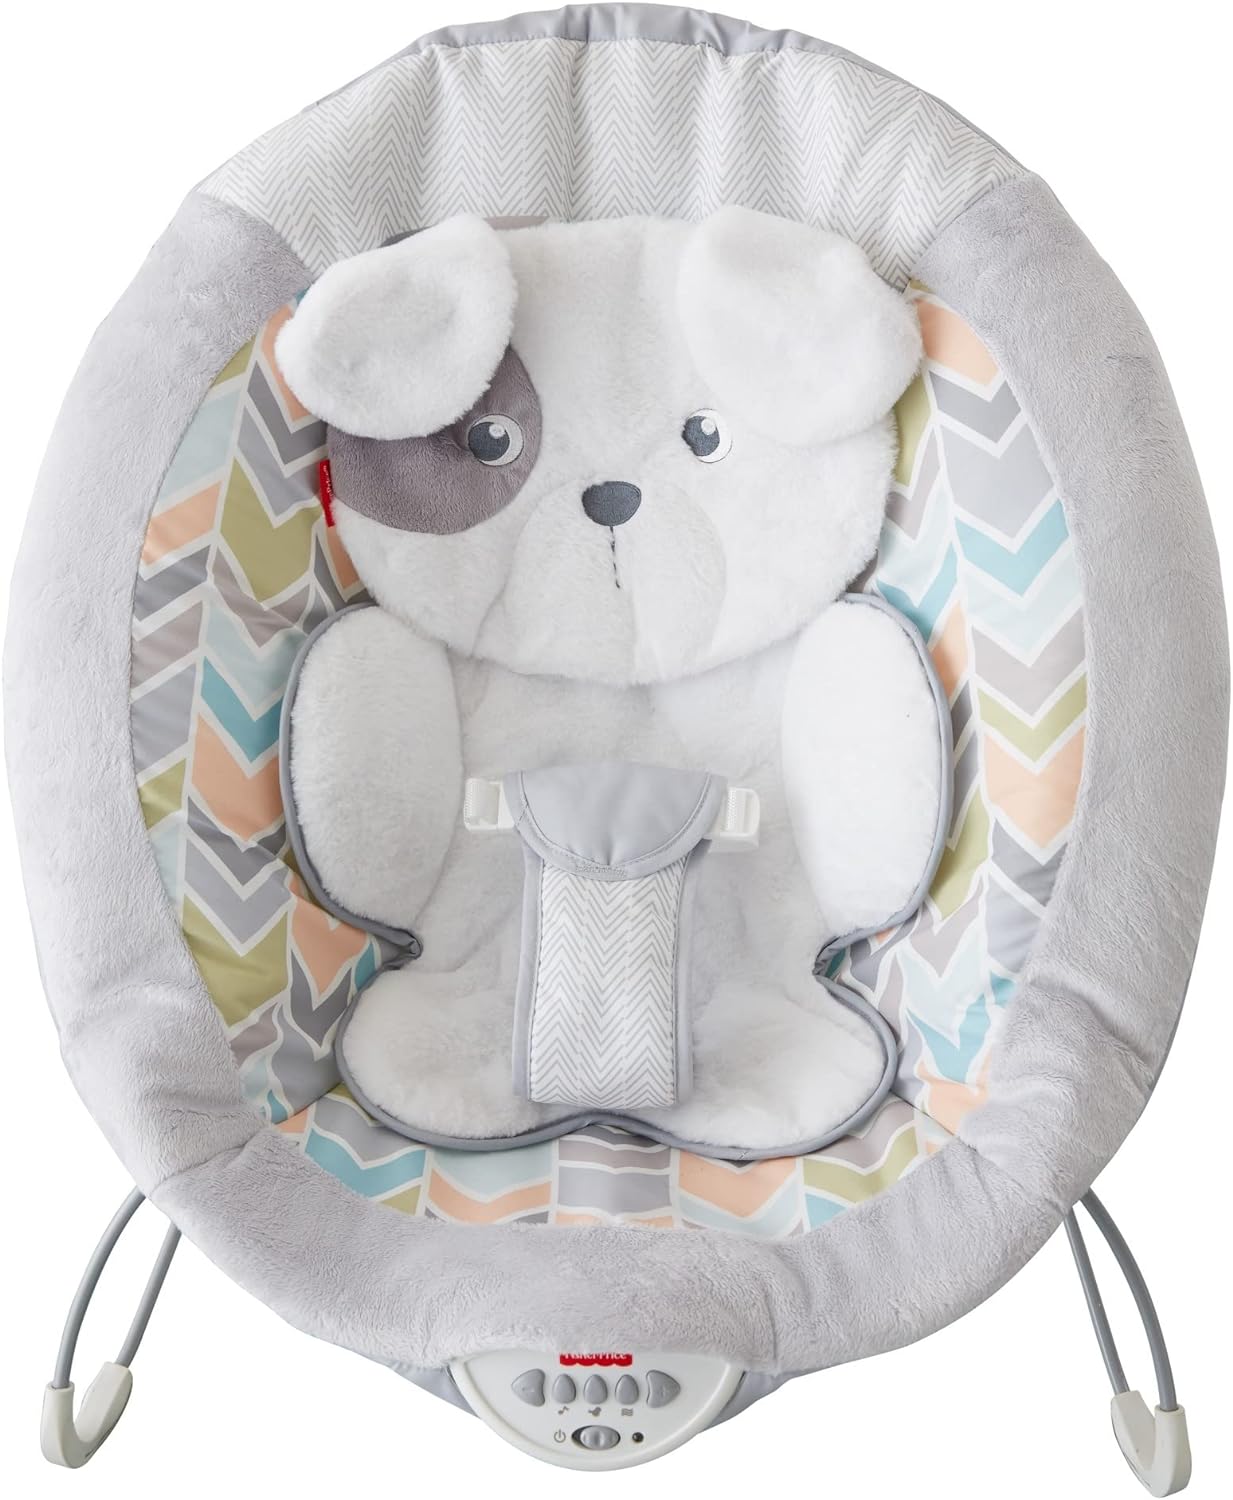 Fisher-Price Sweet Snugapuppy Deluxe Bouncer, assento de bebê portátil com móbile suspenso, música e vibrações calmantes